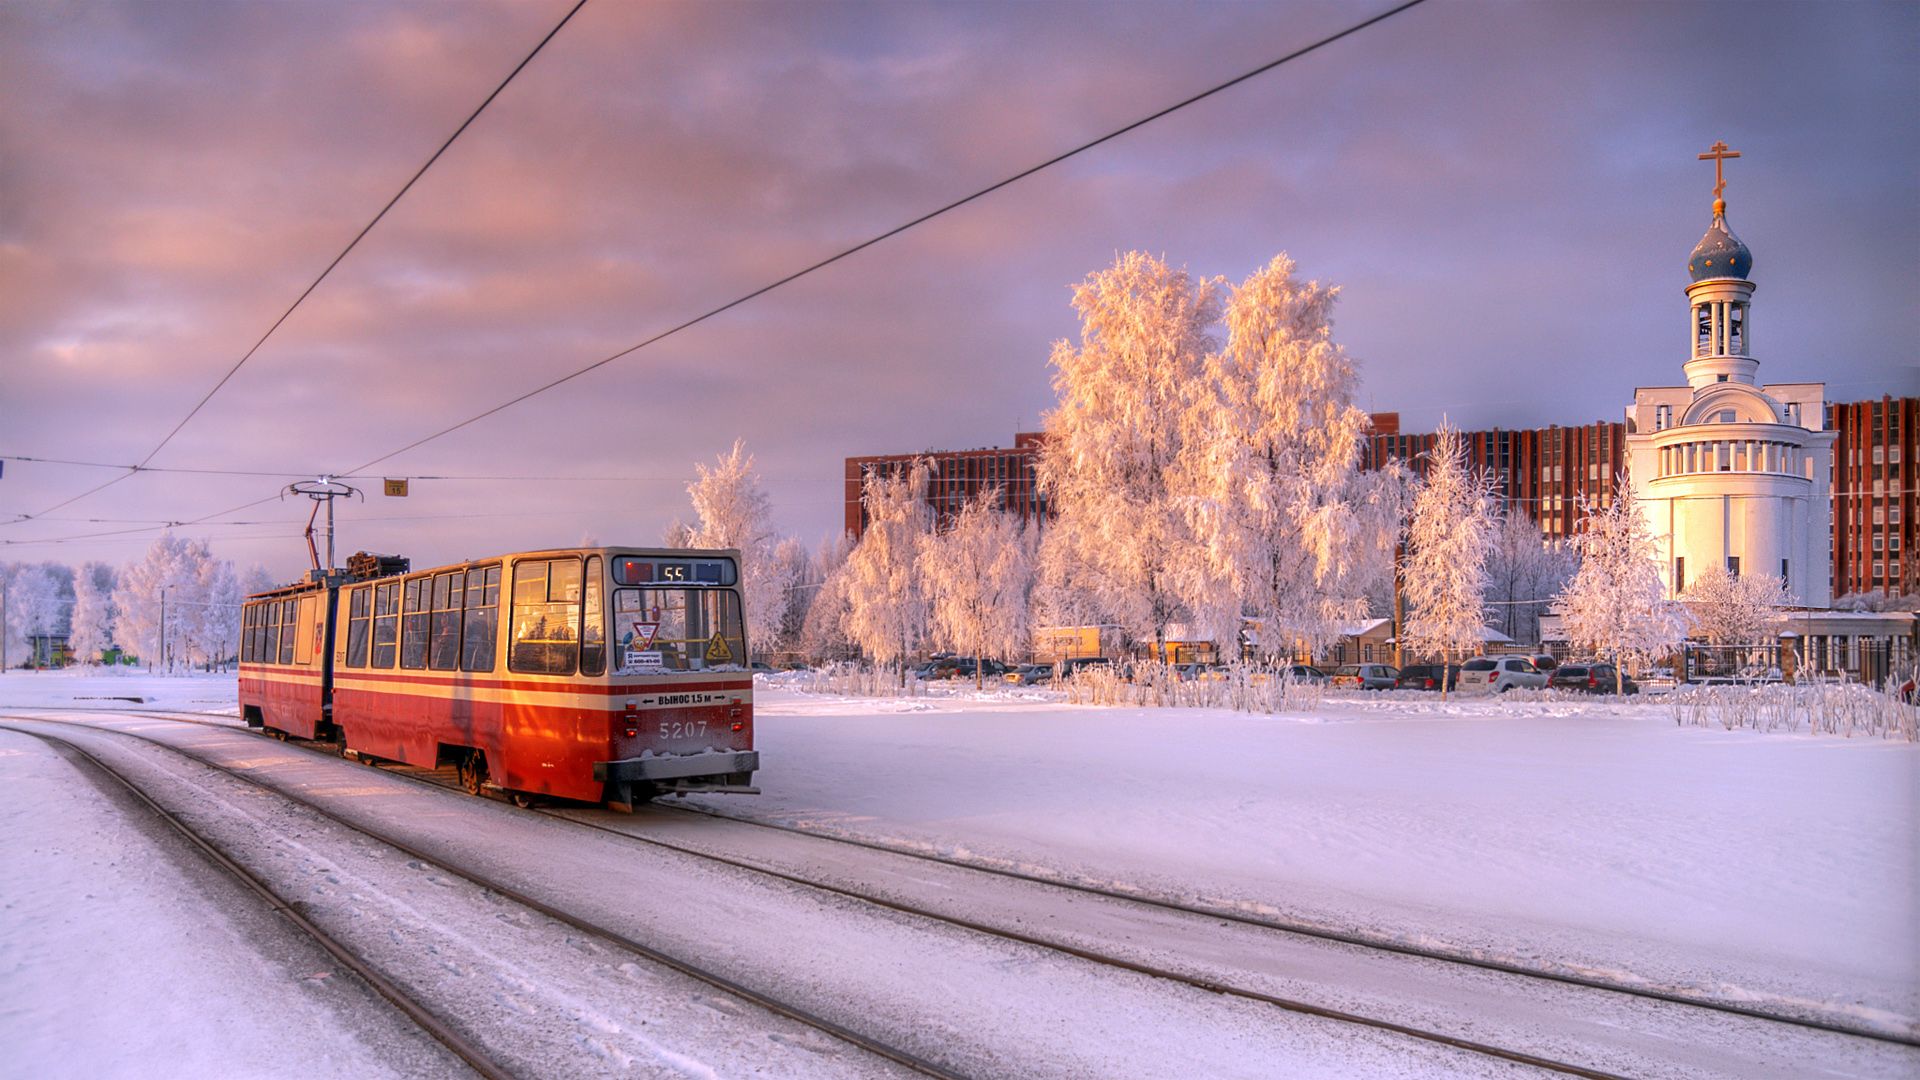 Winter in St Petersburg, Russia [1920x1080]